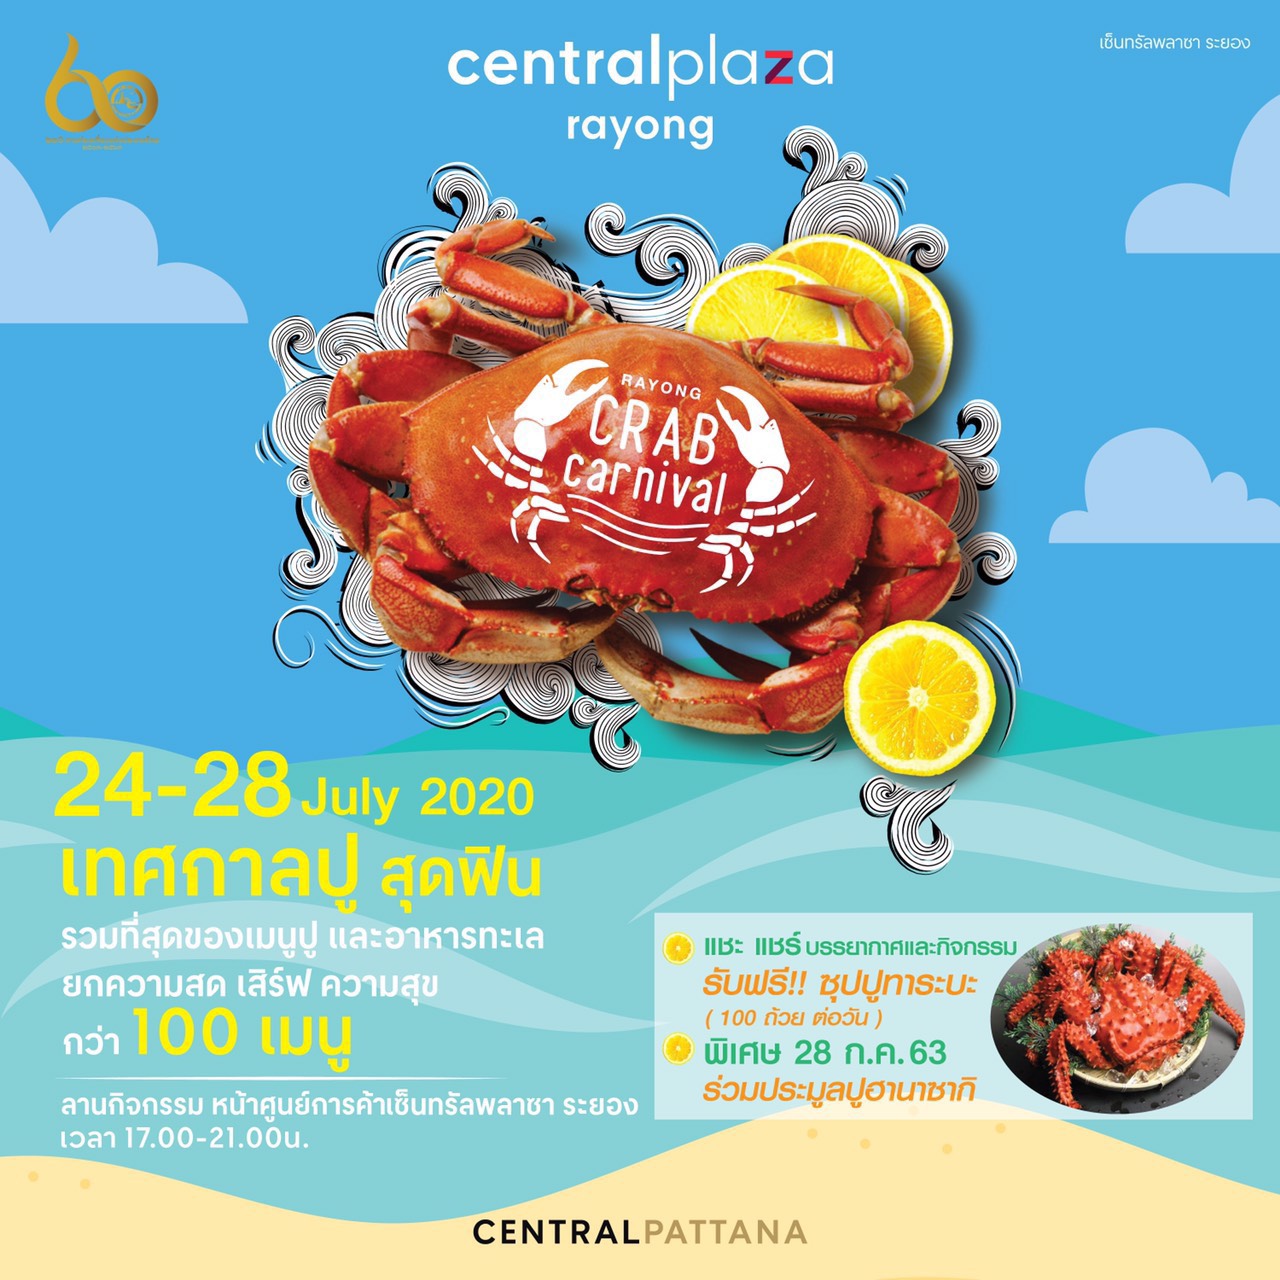 เซ็นทรัลพลาซา ระยอง รวมพลคนชอบปูจัดงาน Rayong Crab Carnival เทศกาลปูสุด